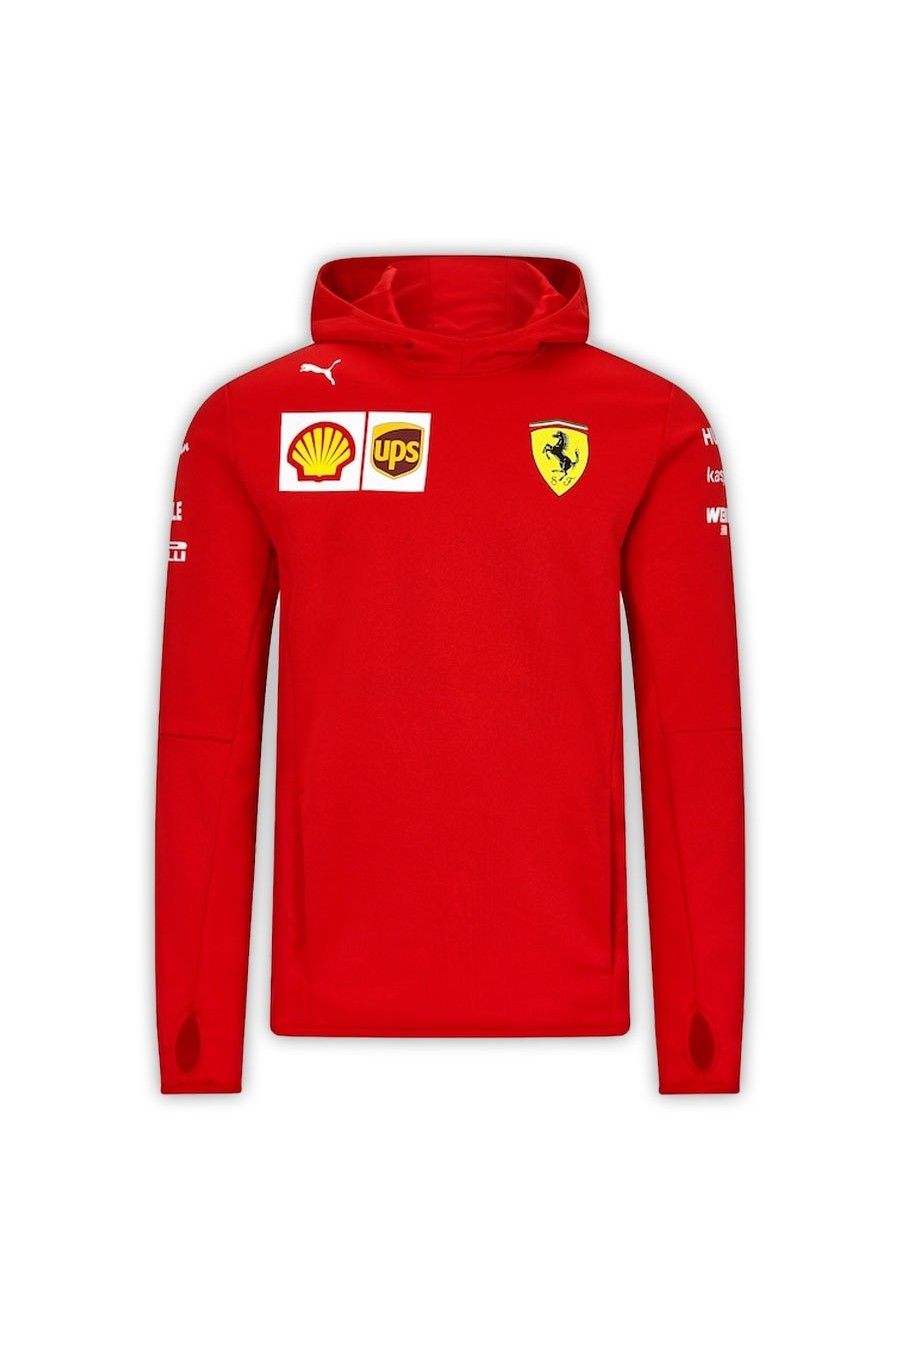 2020 F1 Scuderia Ferrari ufficiale della squadra T shirt ROSSO-Bambino Taglia 